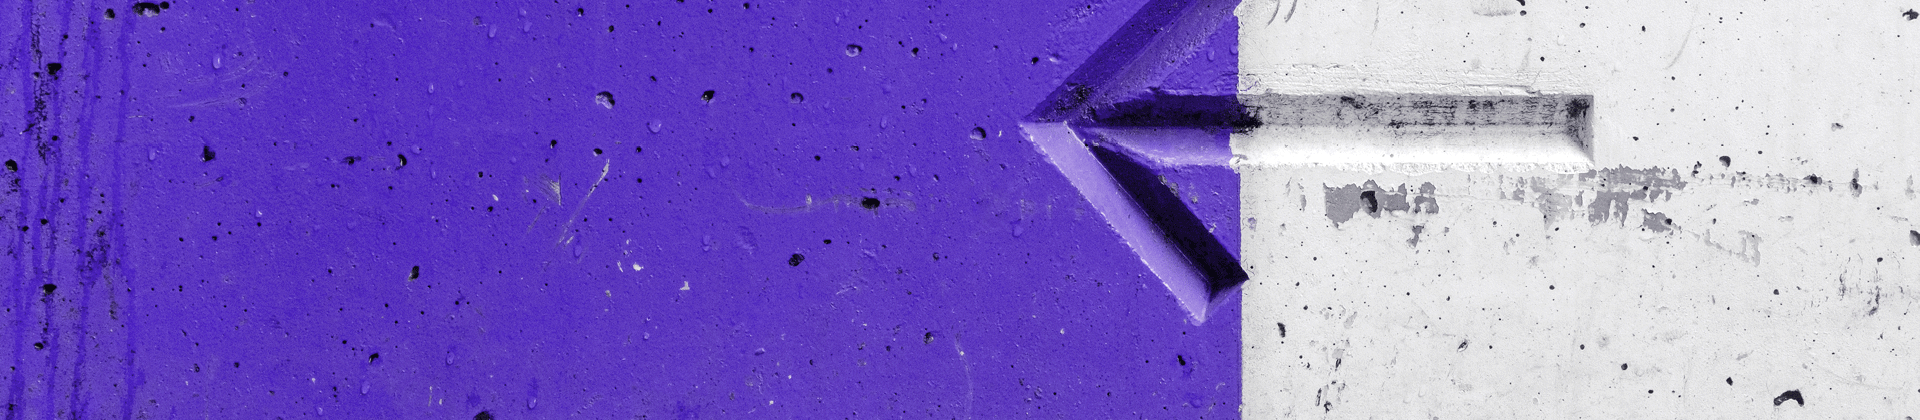 Pfeil nach links zeigend auf zweifarbigem Hintergrund in violett und weiß